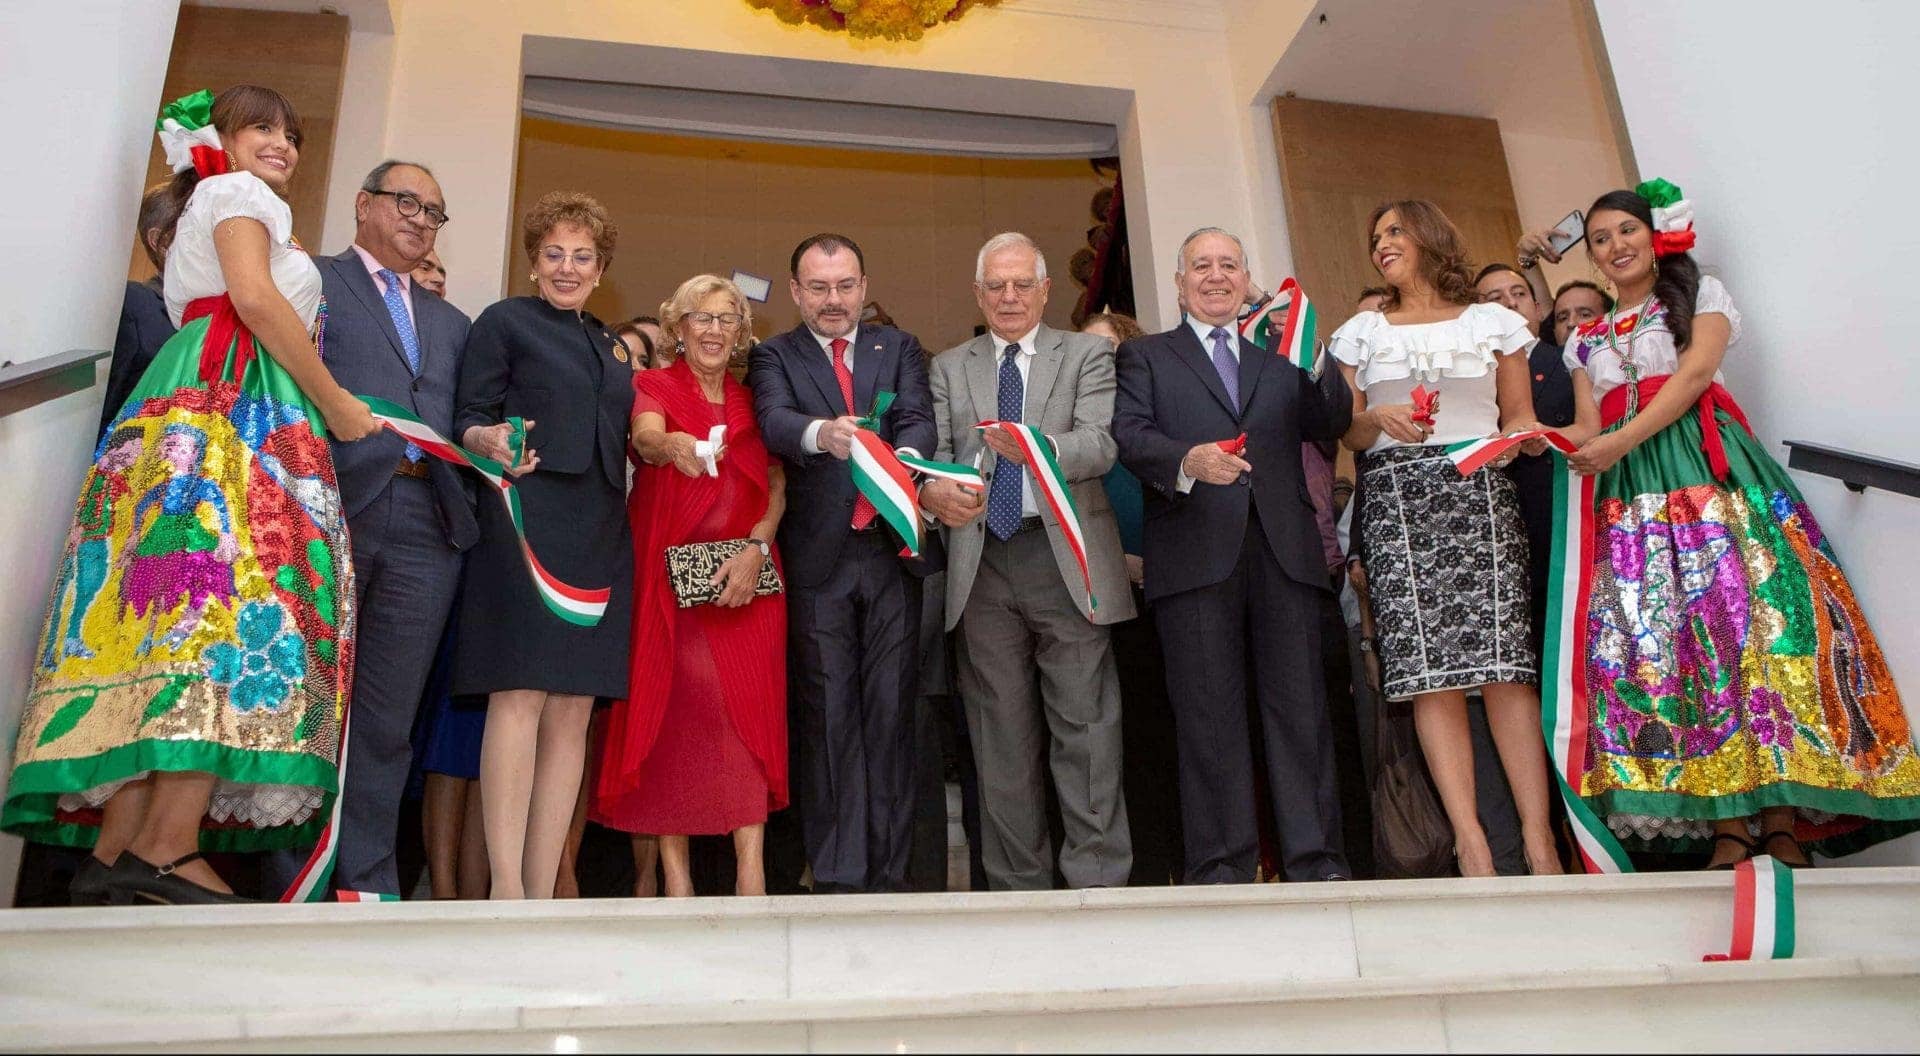 La Casa de Mexico Opens Its Doors